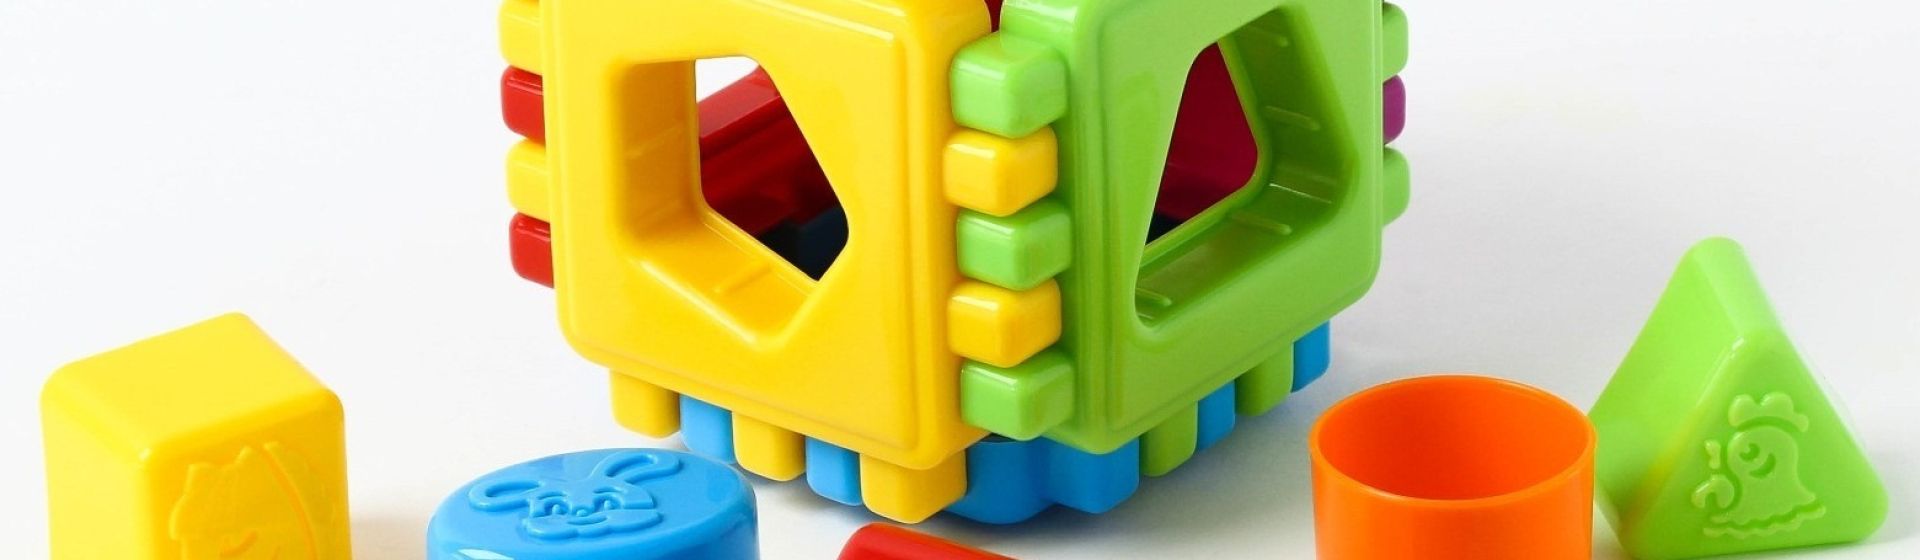 Развивающая игрушка Увлекательный куб HE купить в Самаре - интернет магазин Rich Family